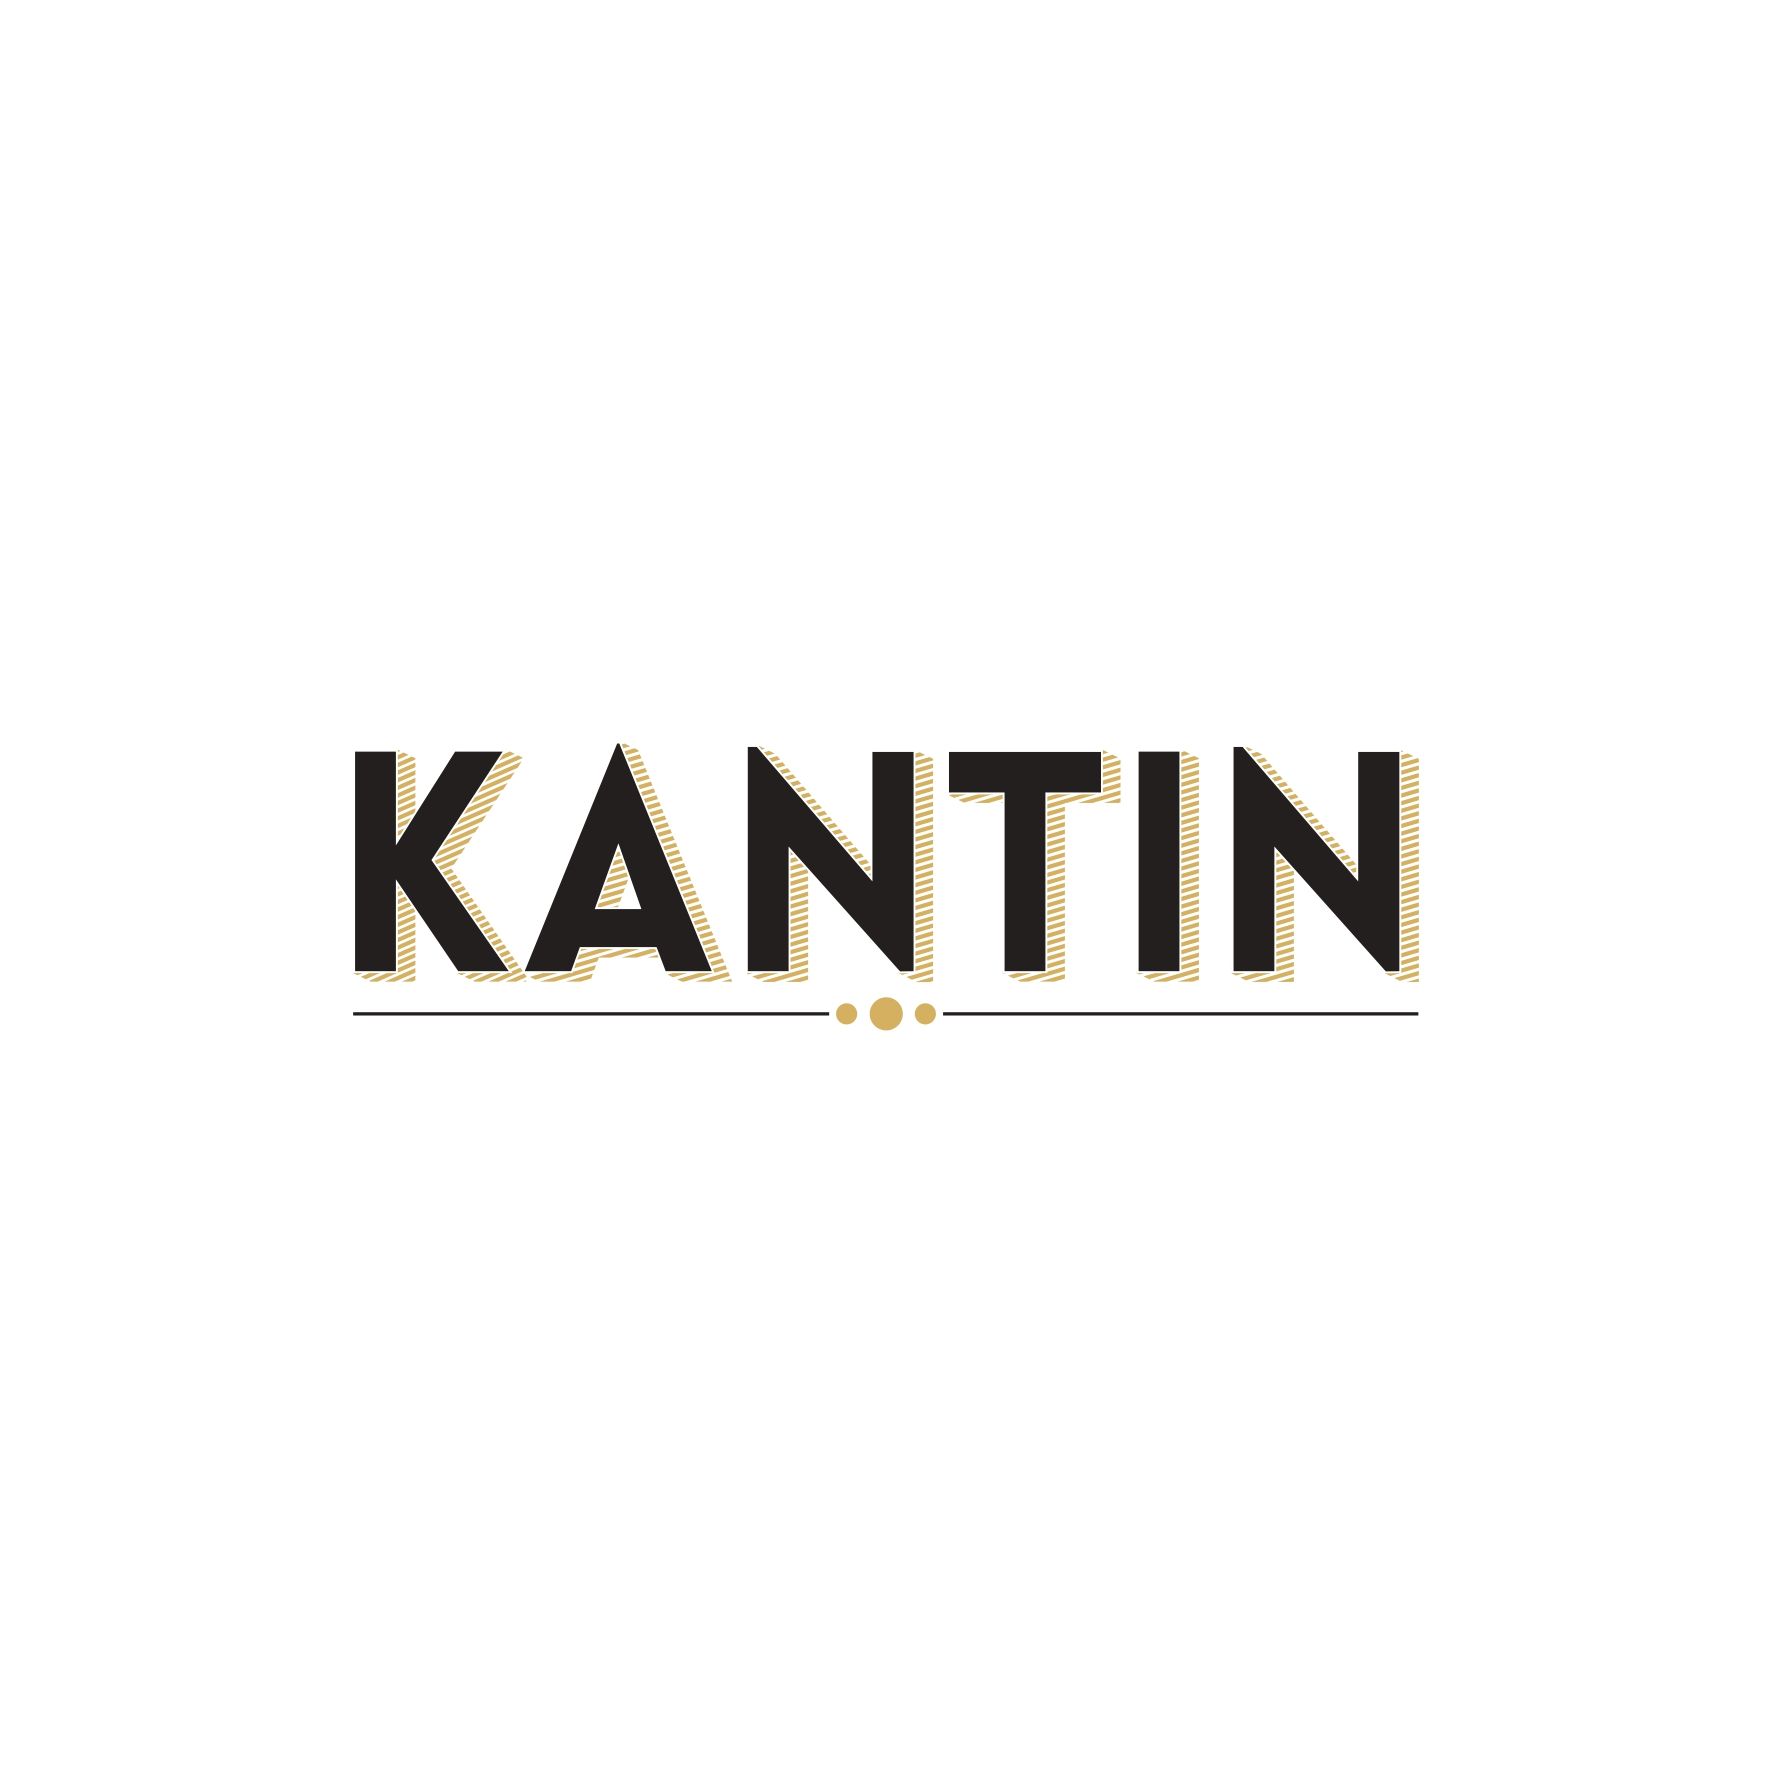 Kantin_6